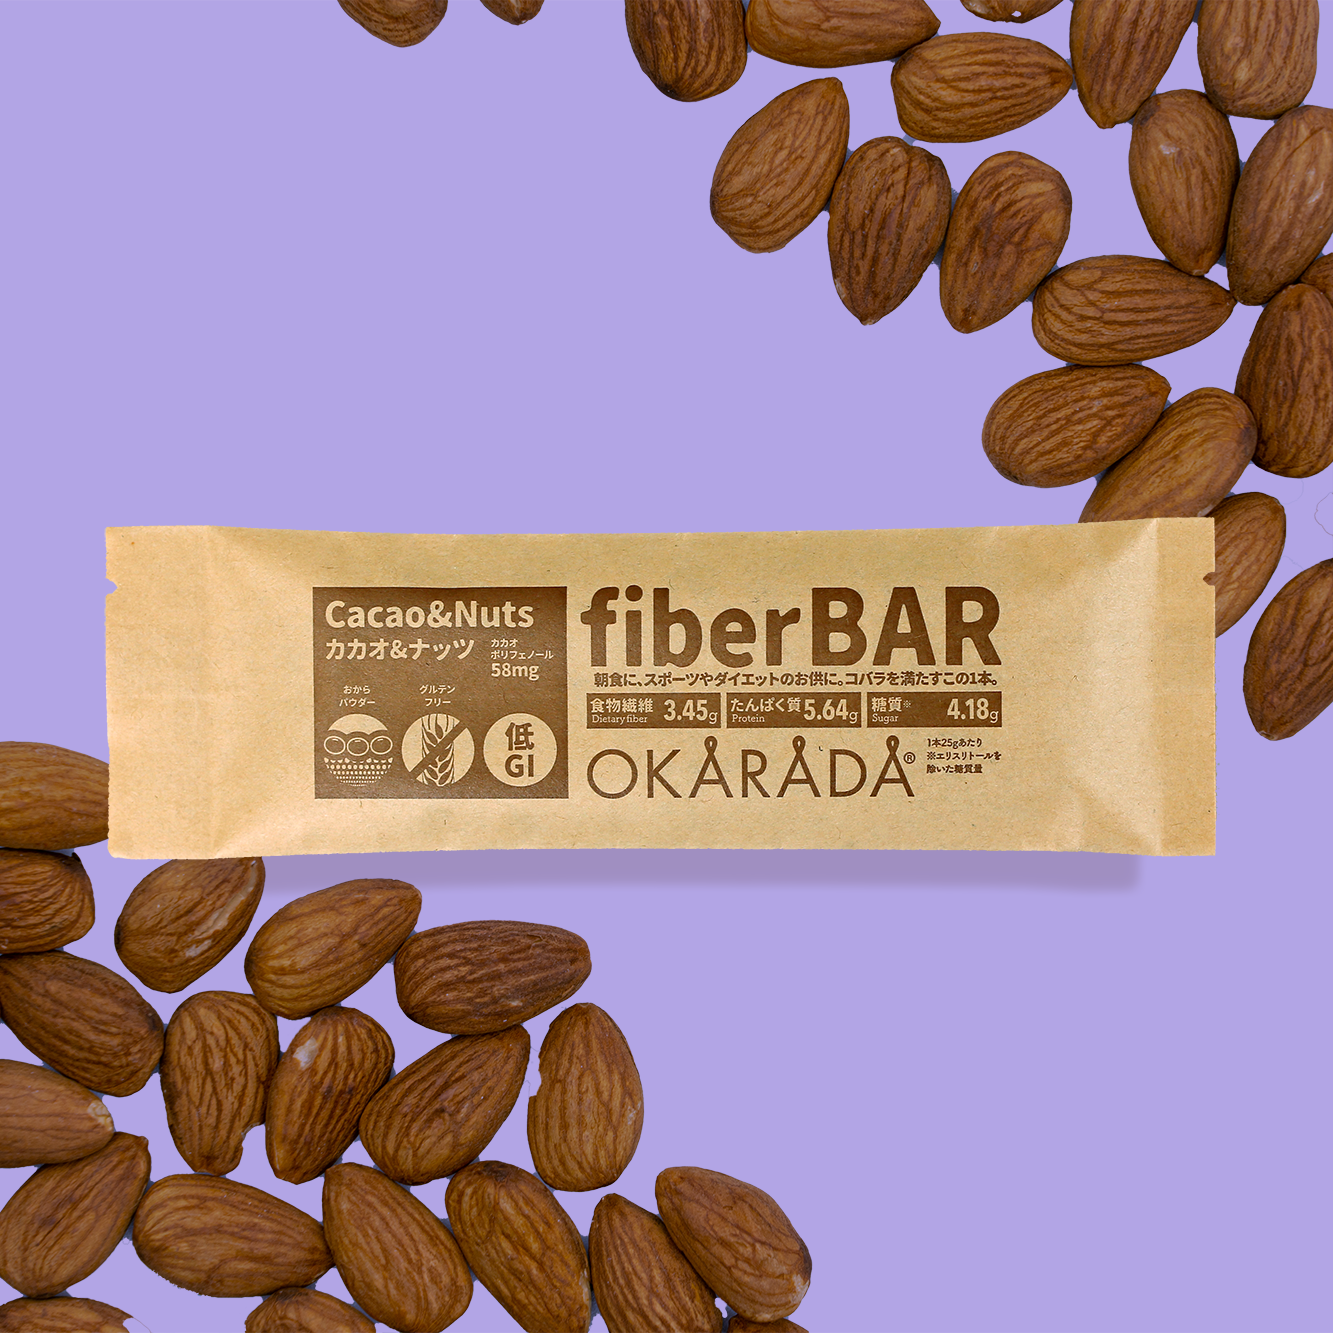 Fiber BAR / Cacao & Nuts